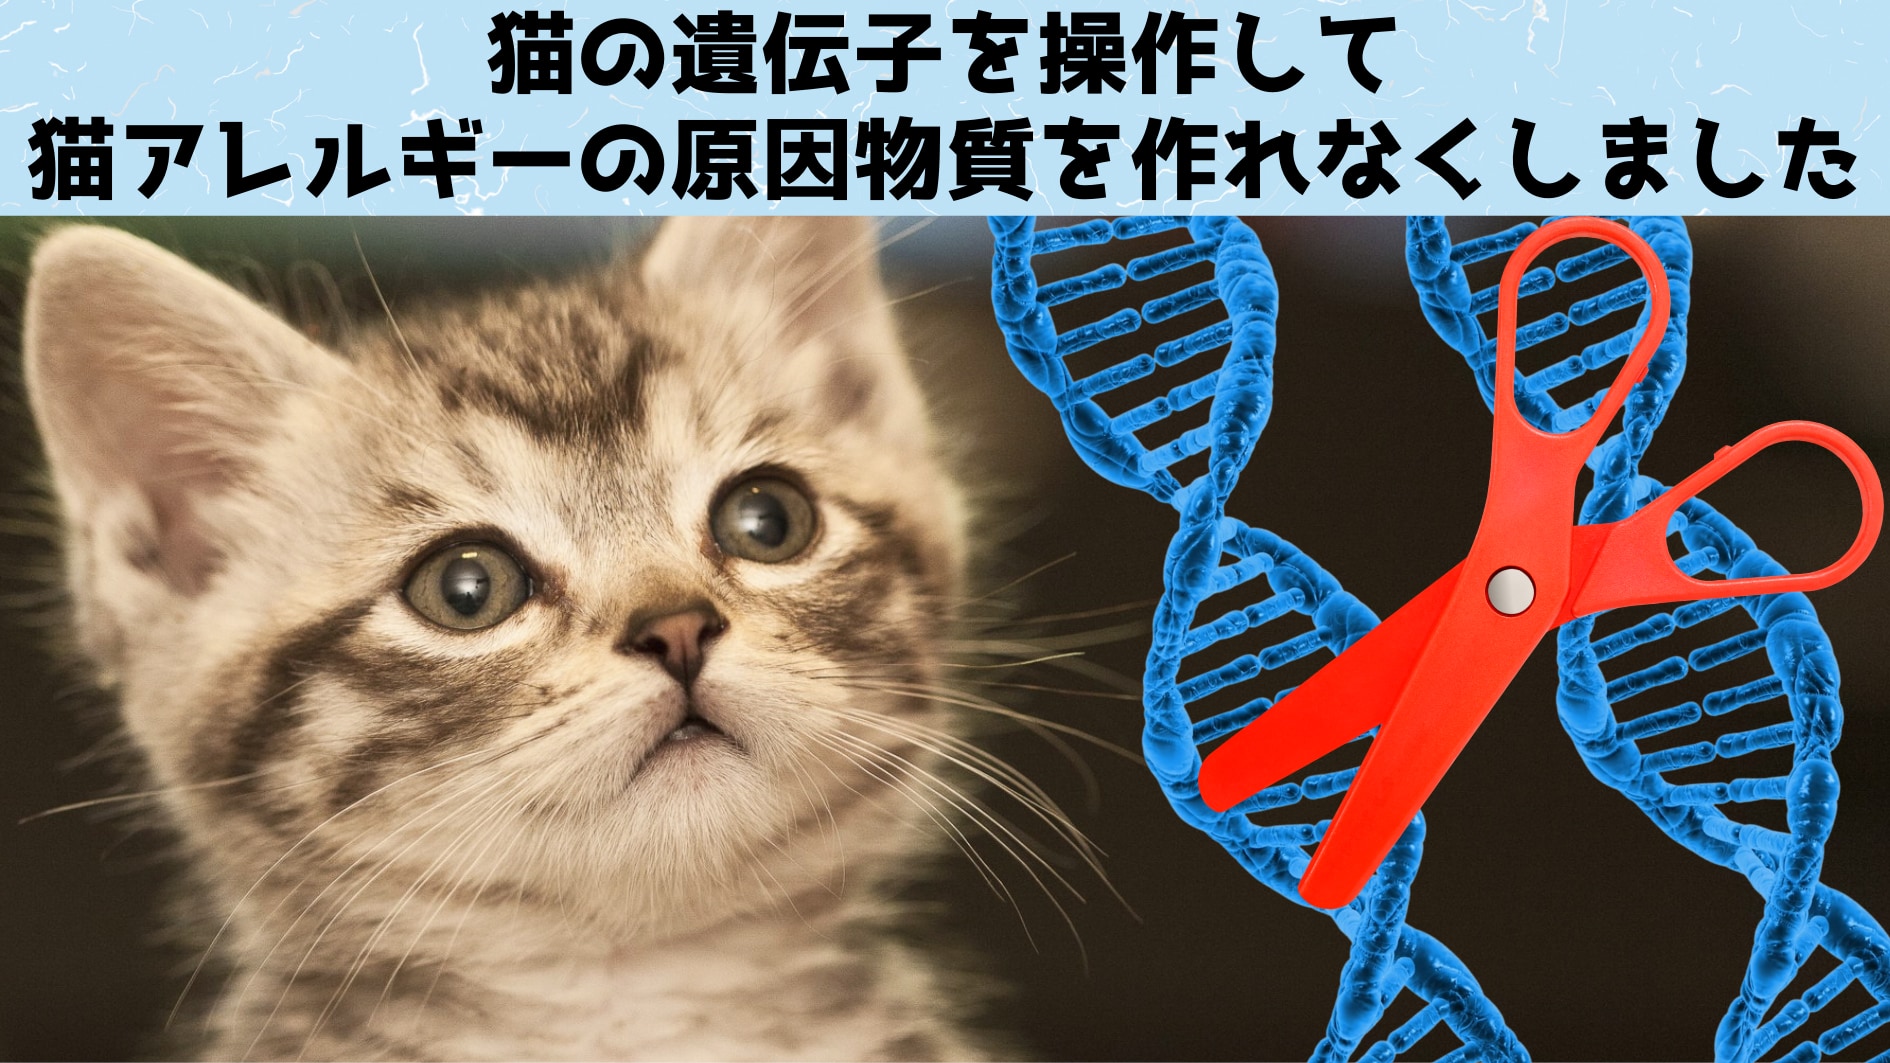 猫を遺伝操作して猫アレルギーの原因物質を作れなくする